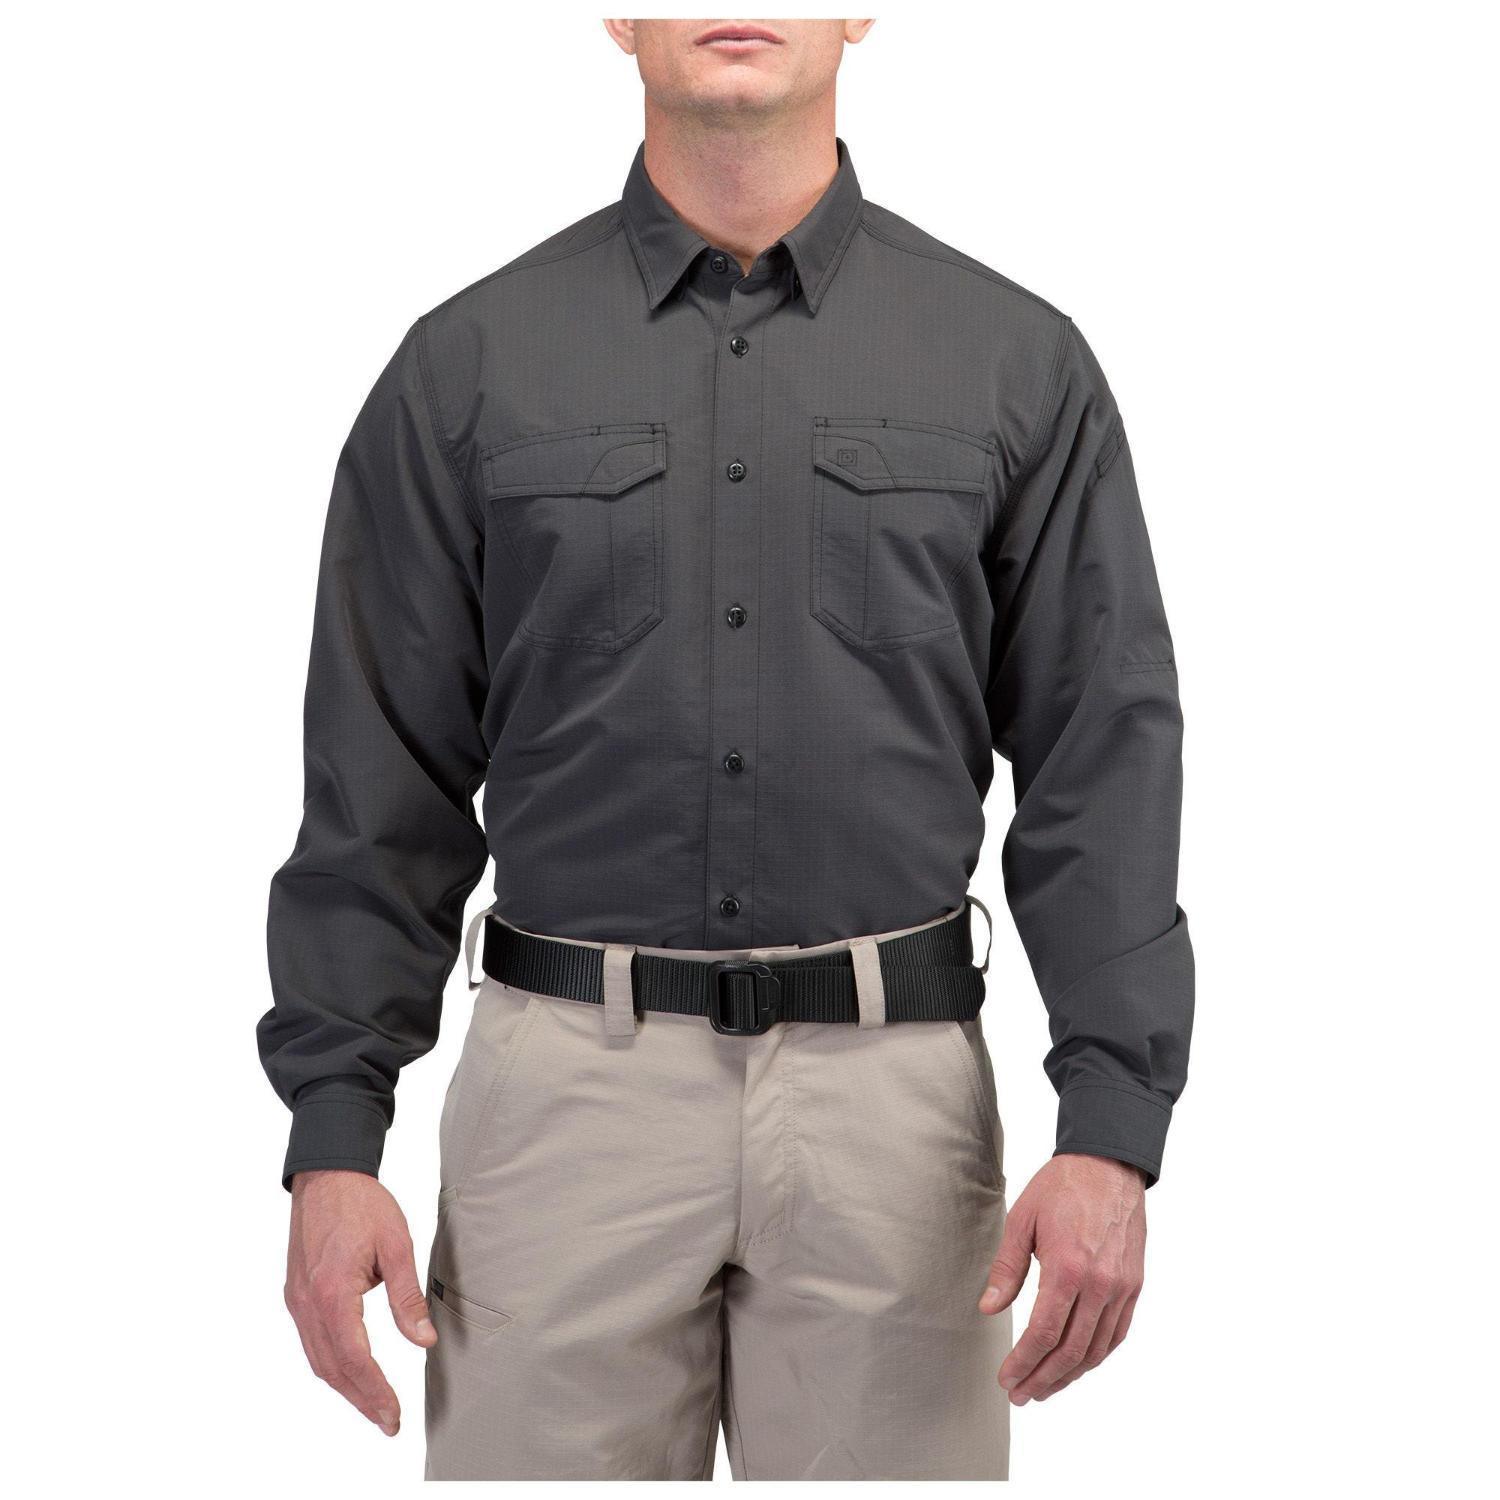 5.11 Fast-Tac Long Sleeve Shirt (Jackor & Tröjor) från 5.11 Tactical. CharcoalS | TacNGear - Utrustning för polis och militär och outdoor.